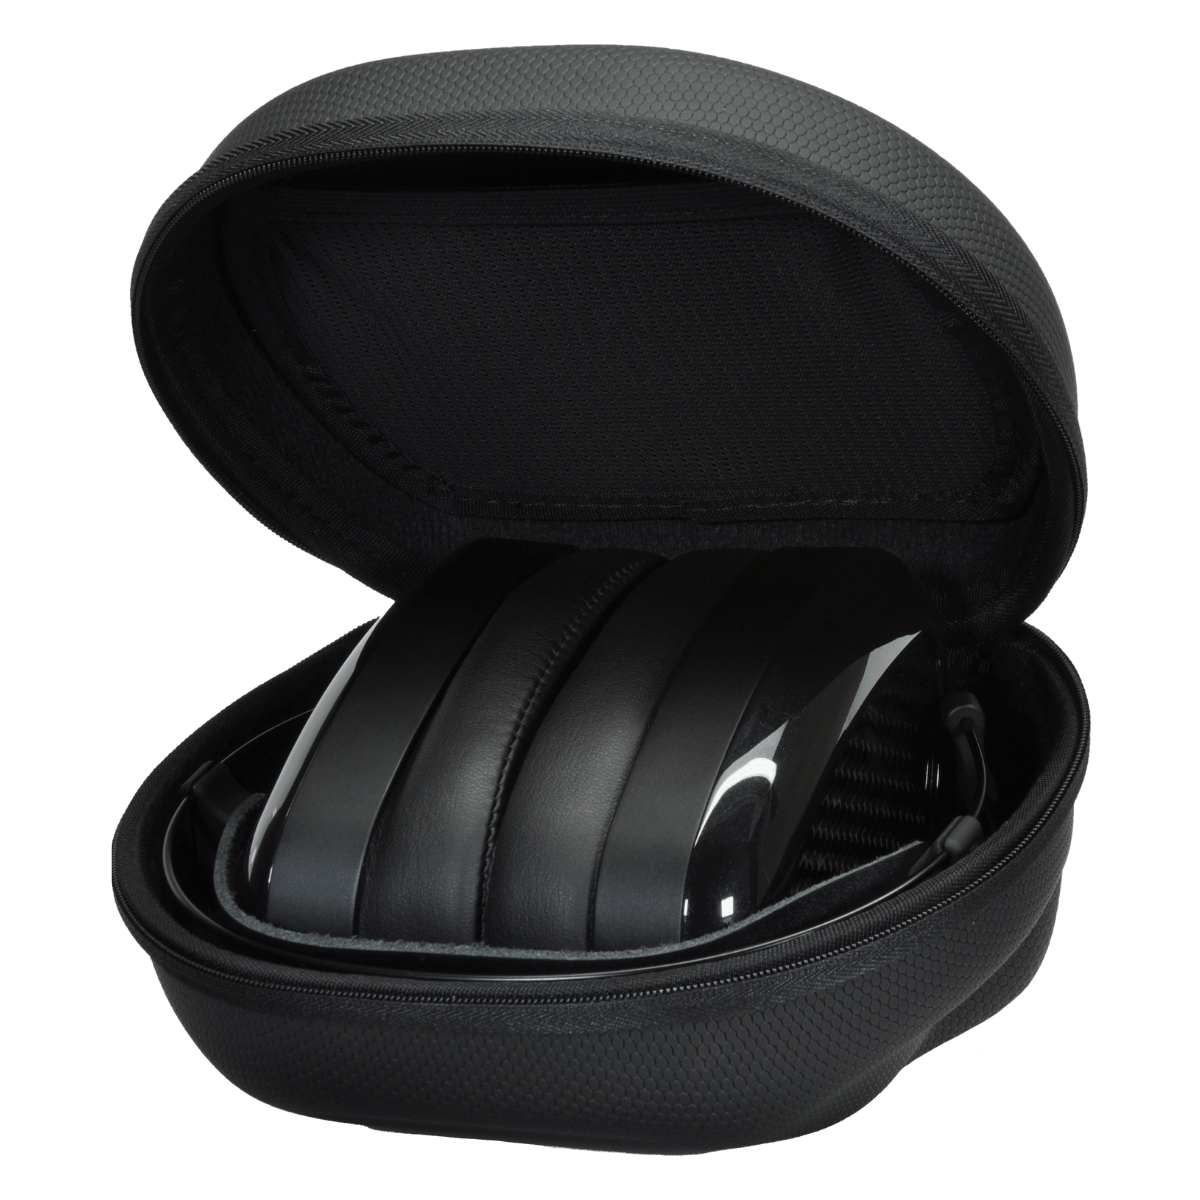 Dan Clark Audio Aeon 2 Noire Over-Ear Headphones